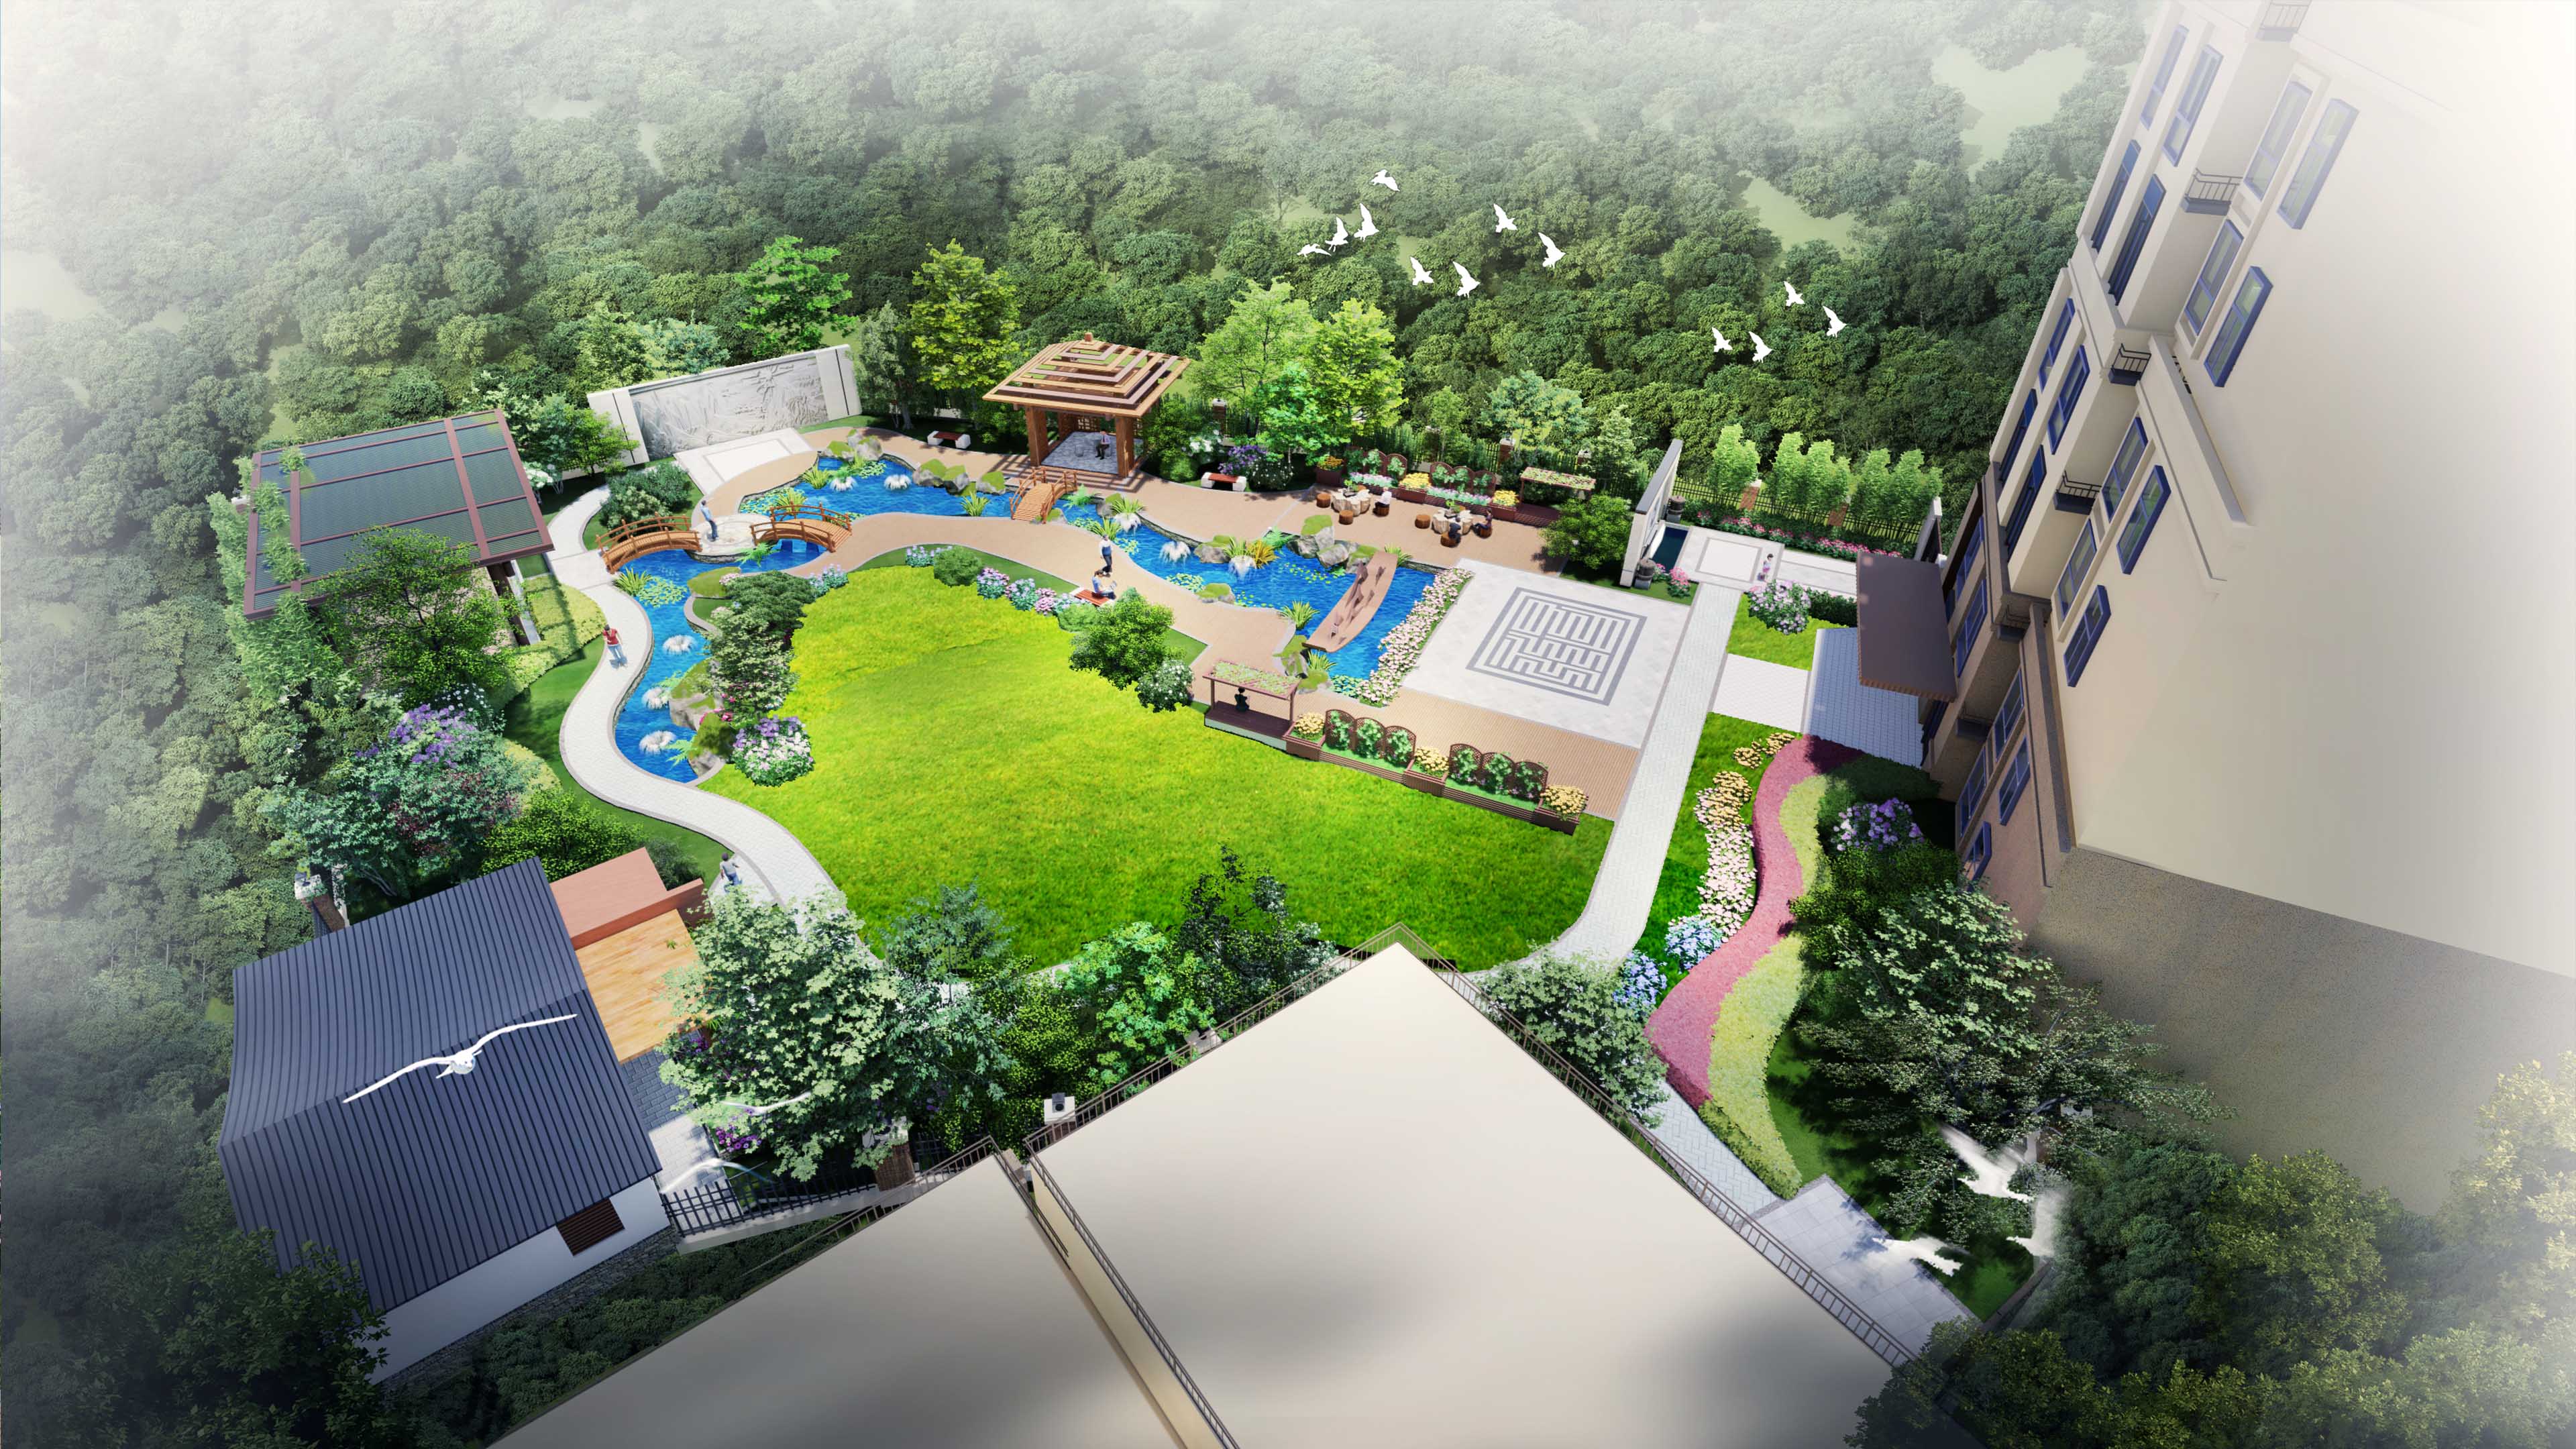 甘肃爱婉亭园林景观工程有限公司针对兰州厂区景观设计的规划建议